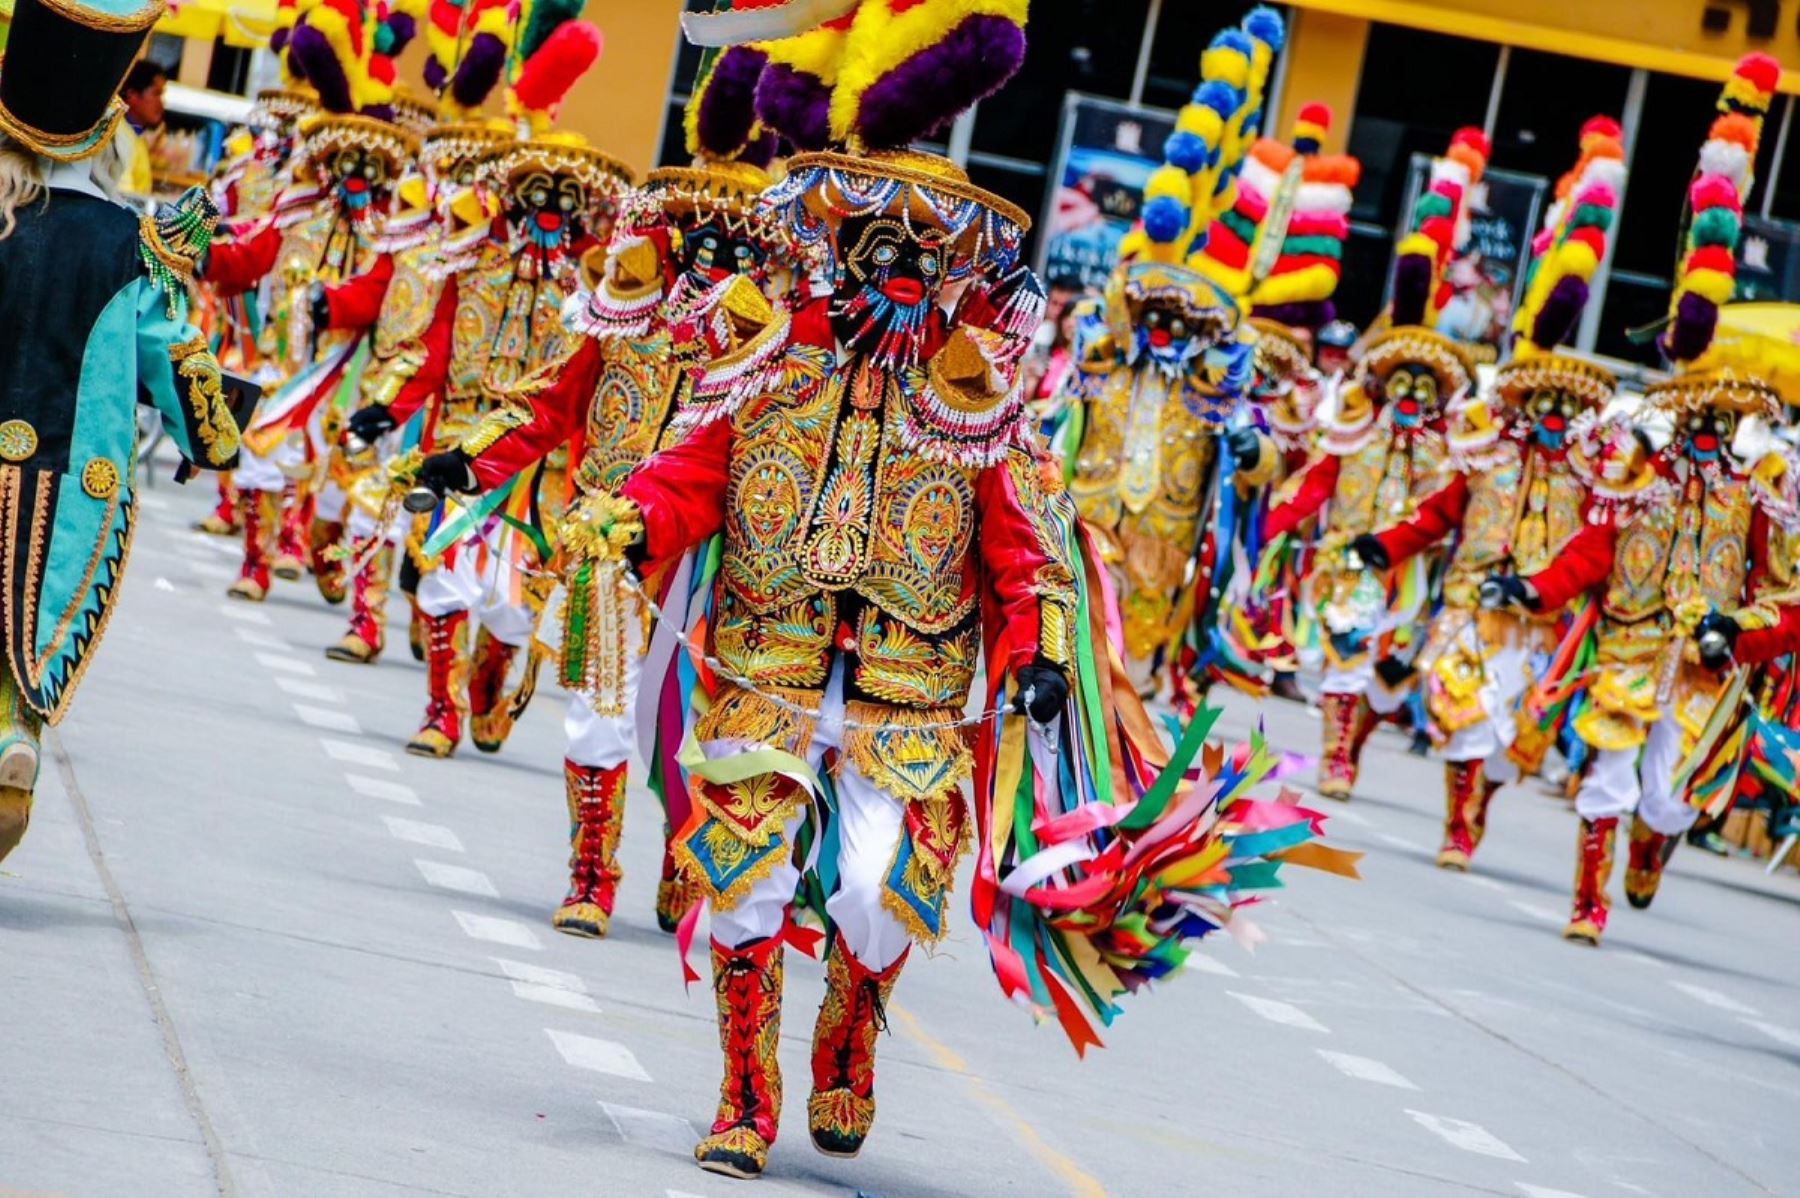 Directamente desde Huánuco llega a Lima la cofradía de Negritos de Huánuco, danza declarada patrimonio cultural de la Nación, que tienen un papel protagónico en la Festividad del Niño Jesús que se celebra en la ciudad entre el 24 de diciembre y el 19 de enero.